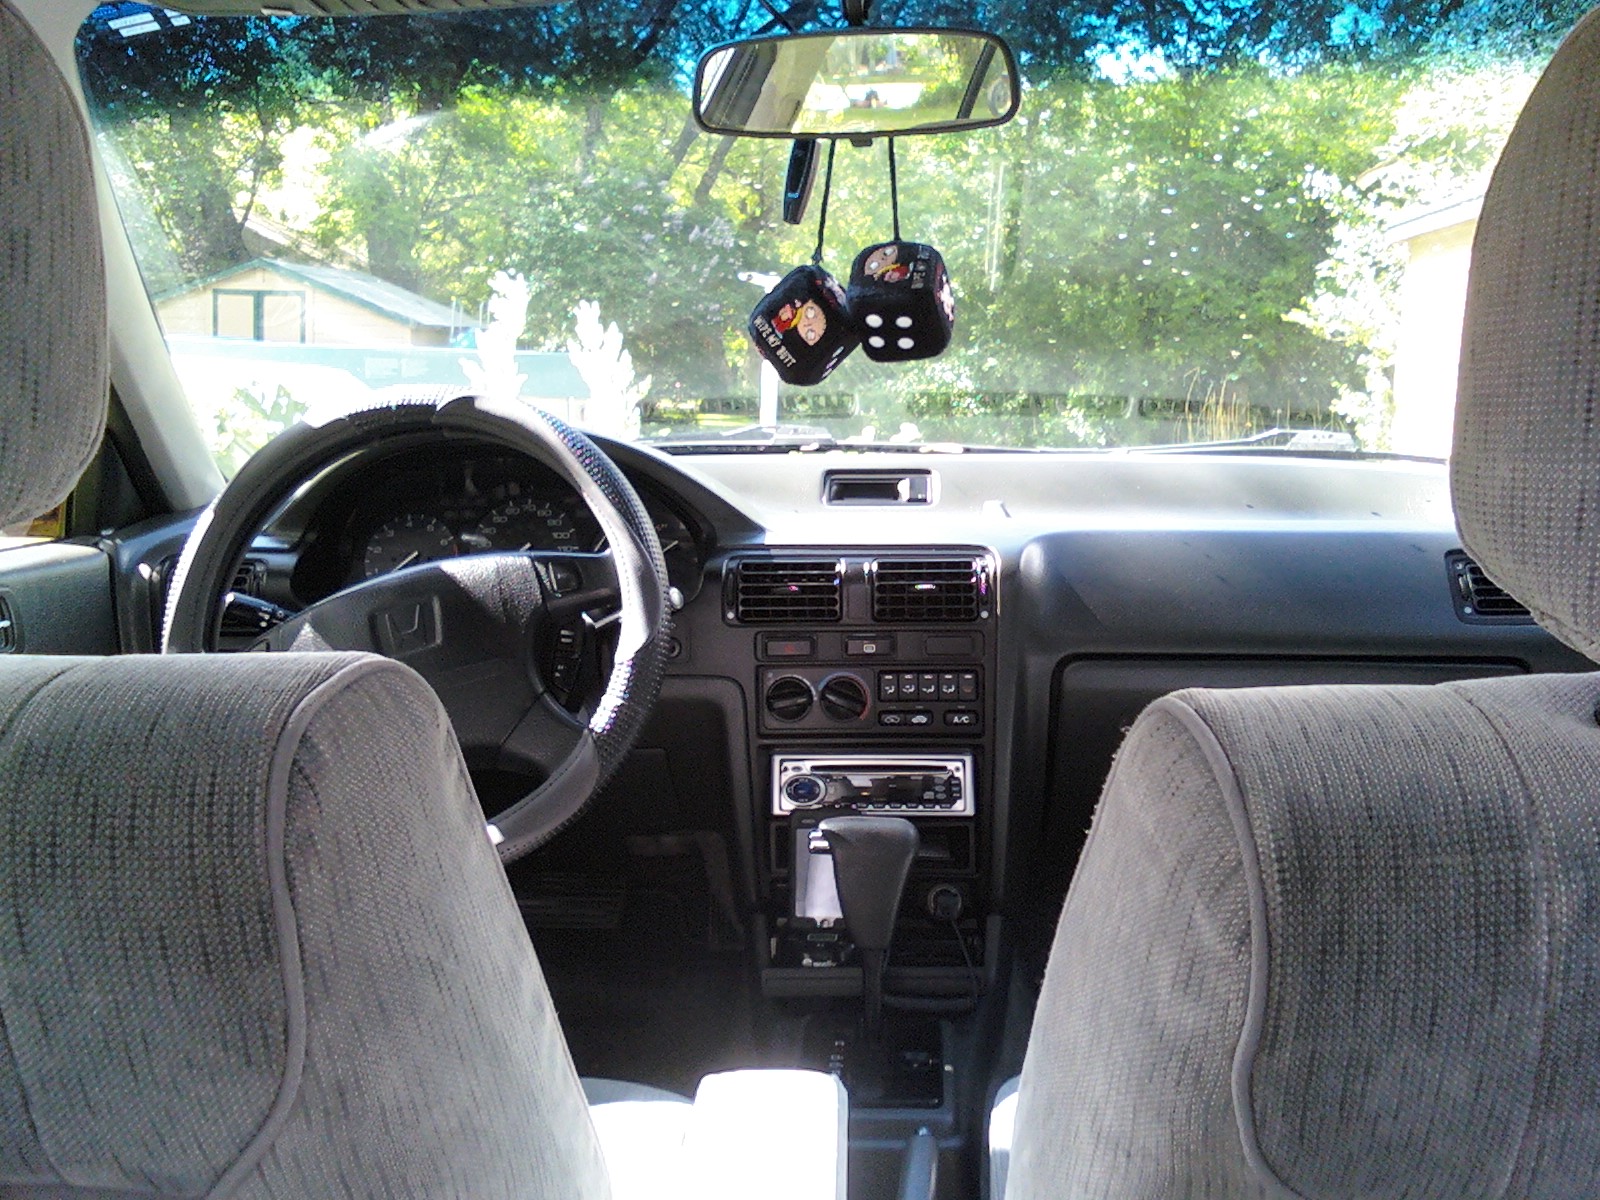 1993 Honda accord interior pictures